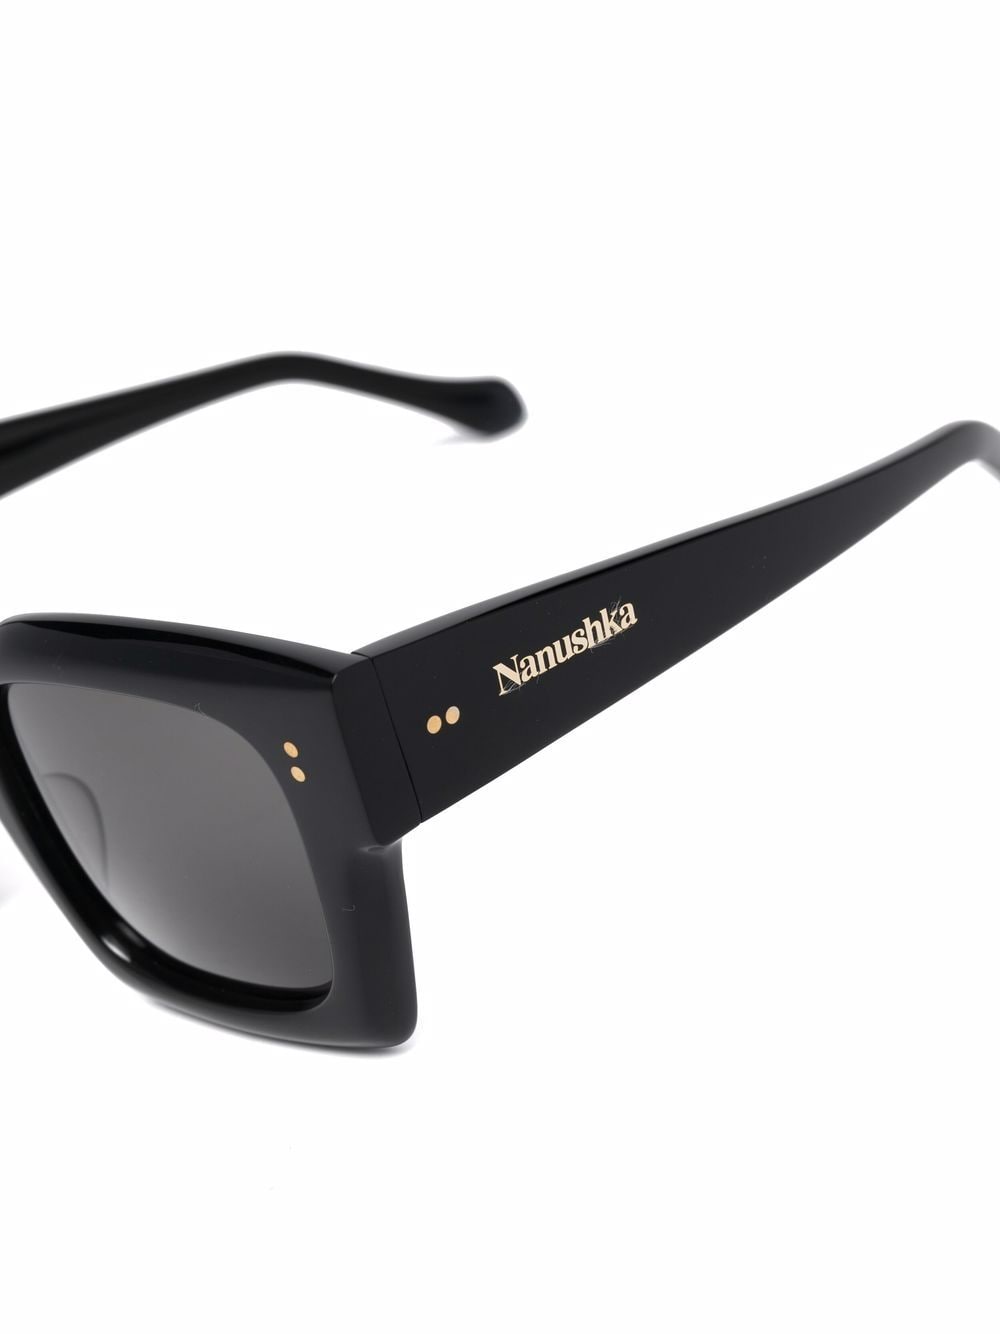 Nanushka - Callias - Bio-Plastic Sunglasses - Black